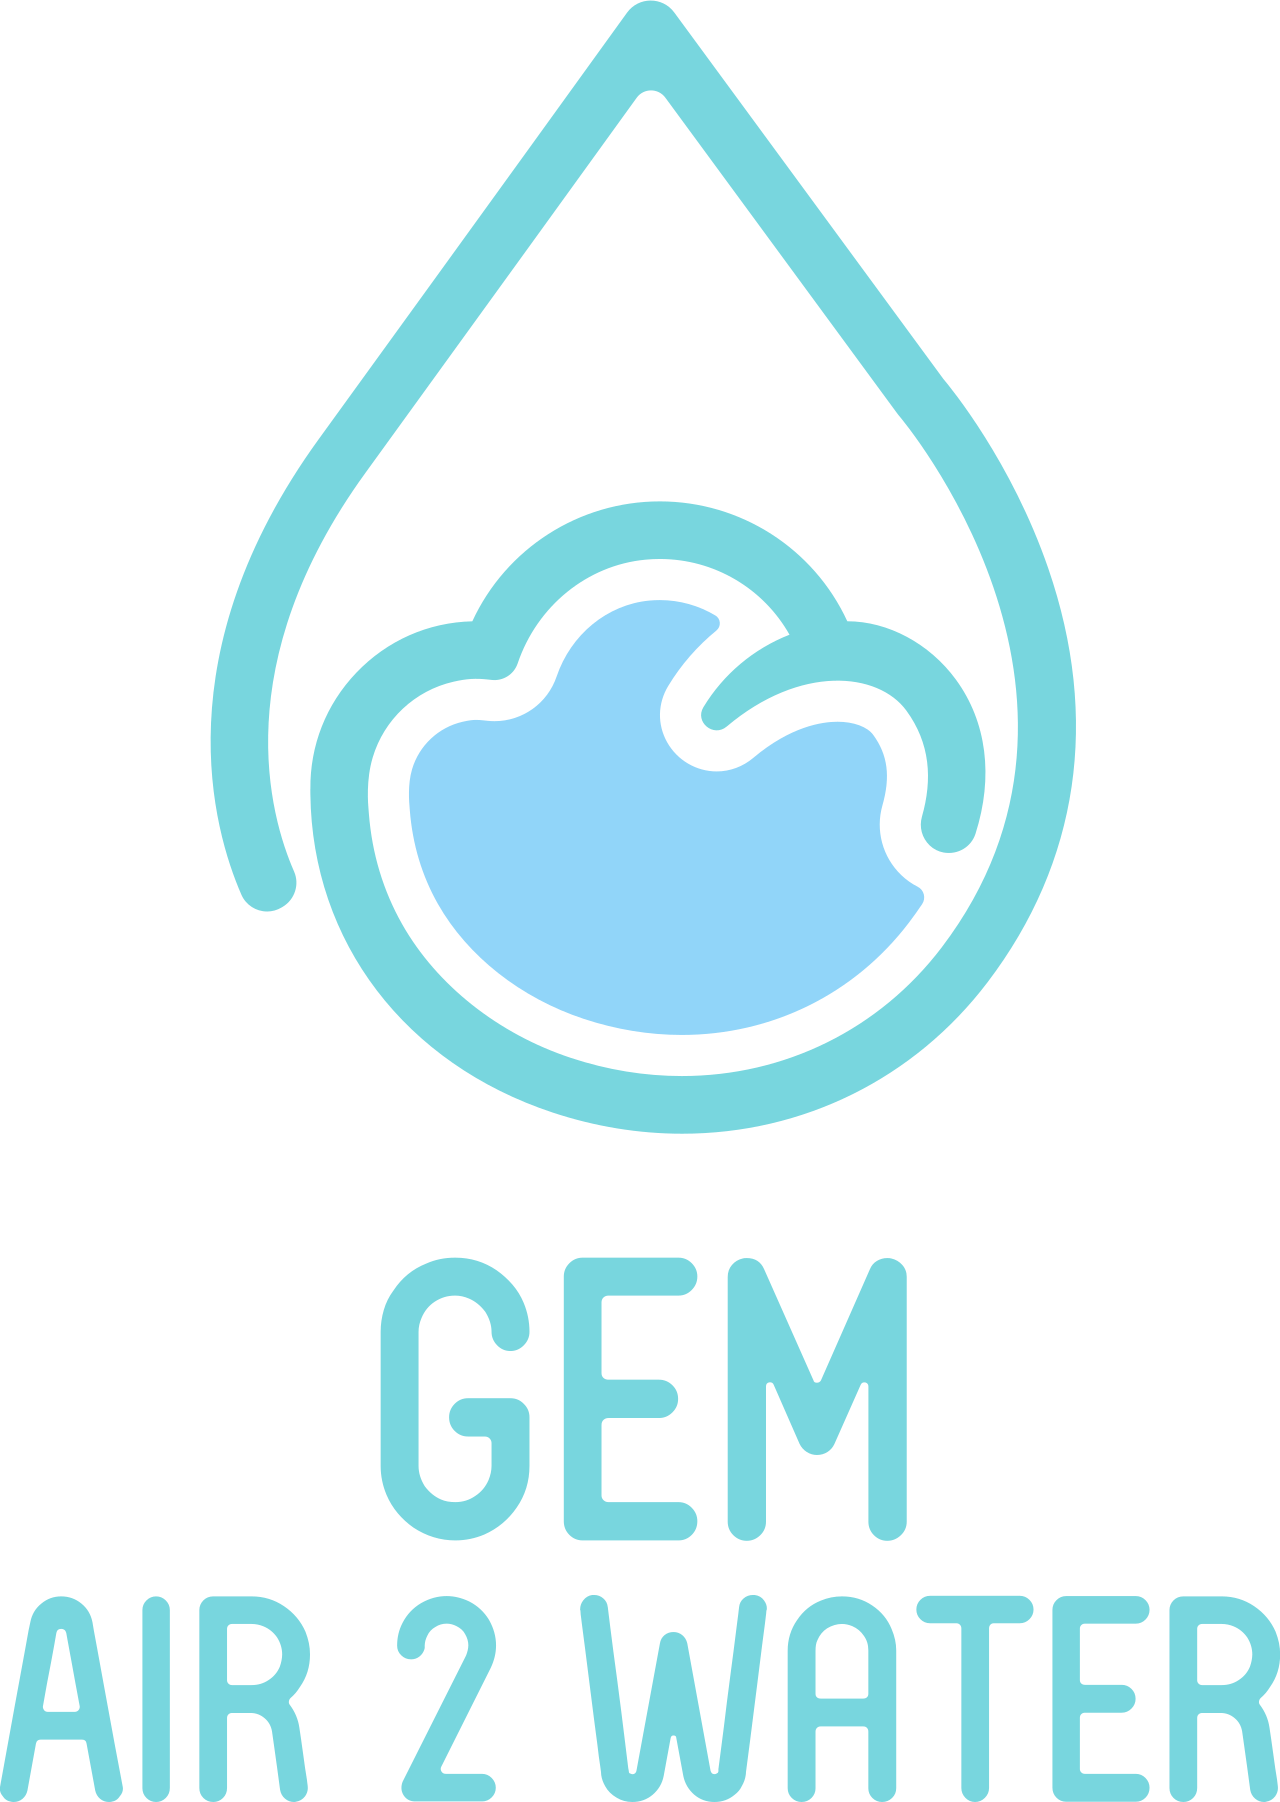 GEM's web page